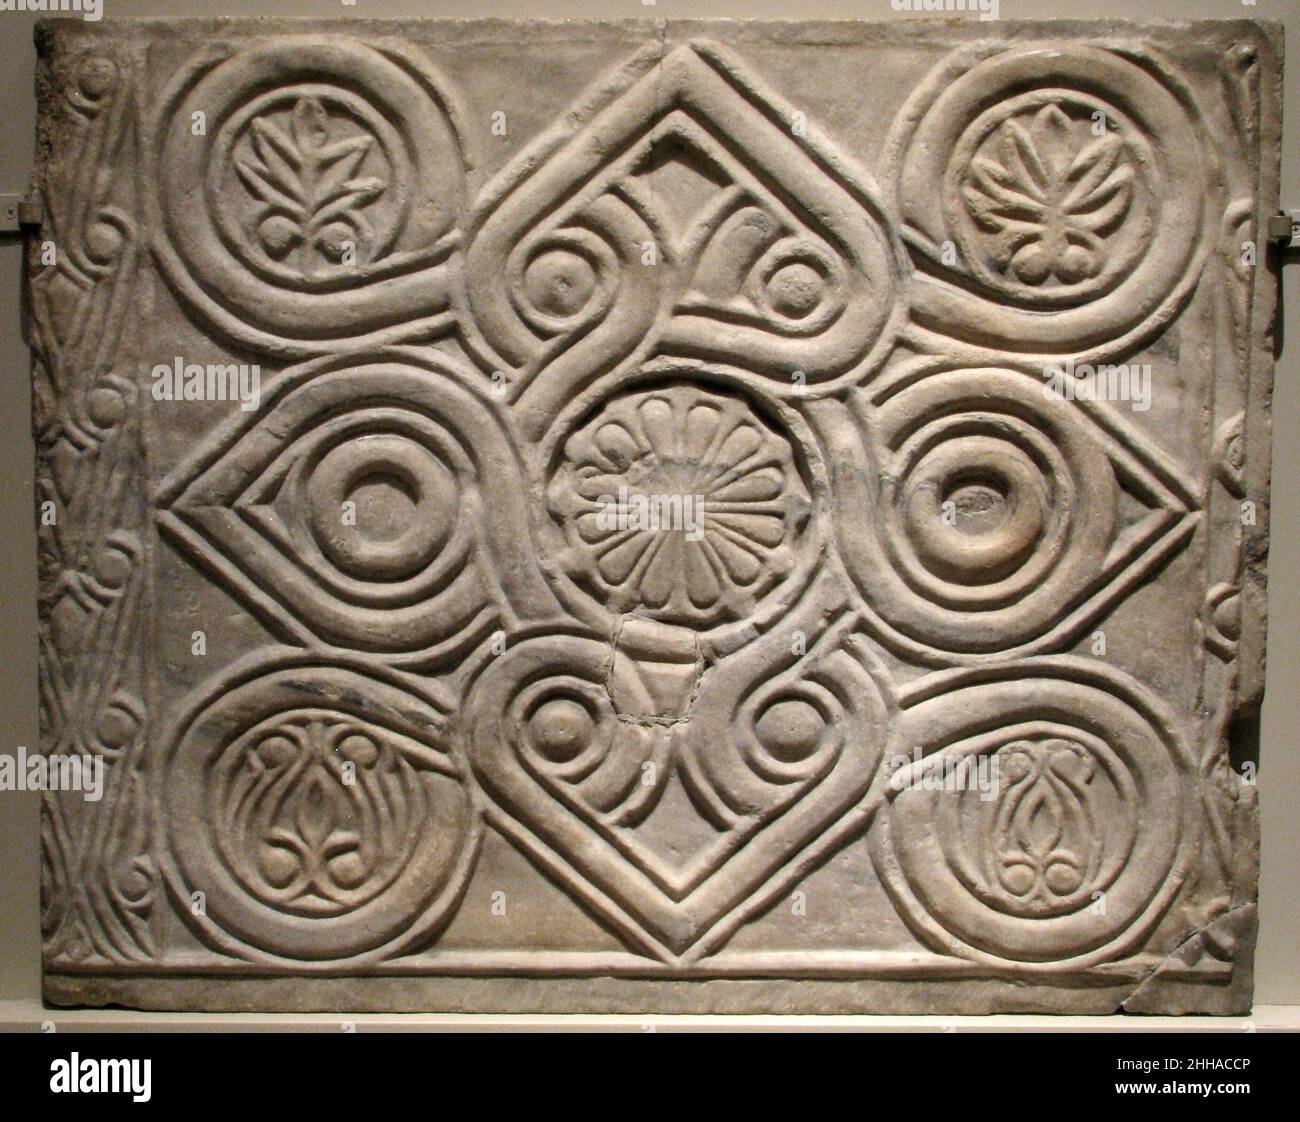 Pannelli decorativi in marmo i pannelli in marmo bizantino del 11th–10th  secolo come questi sono stati usati in tutto il mondo bizantino come basi  per i temploni così come per le pareti